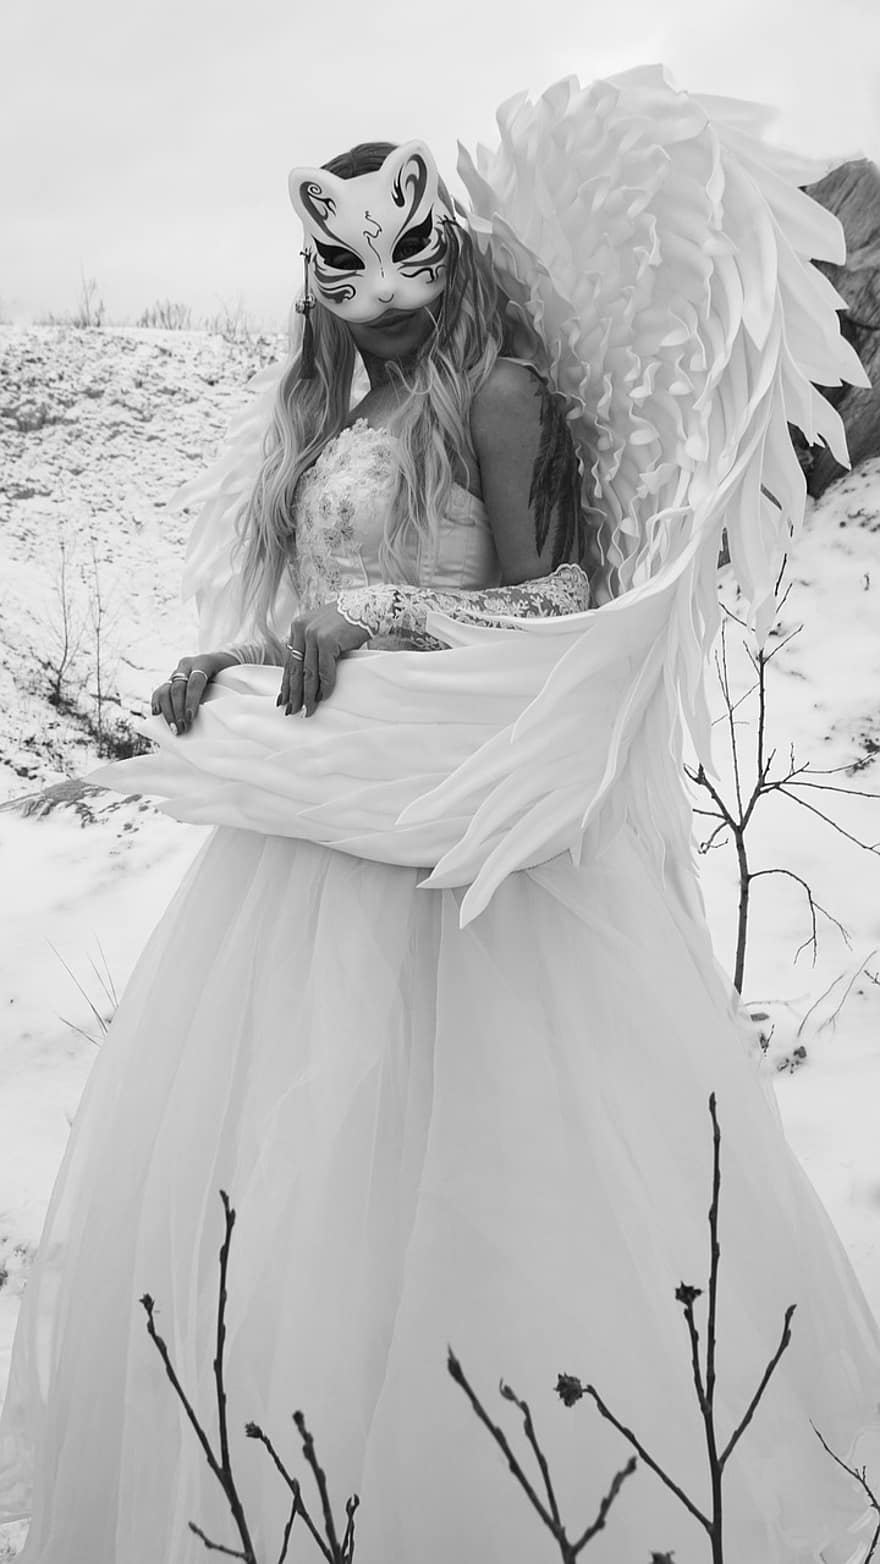 костюм, женщина, крылья, платье, маскировать, история, фантастика, мистический, зима, снег